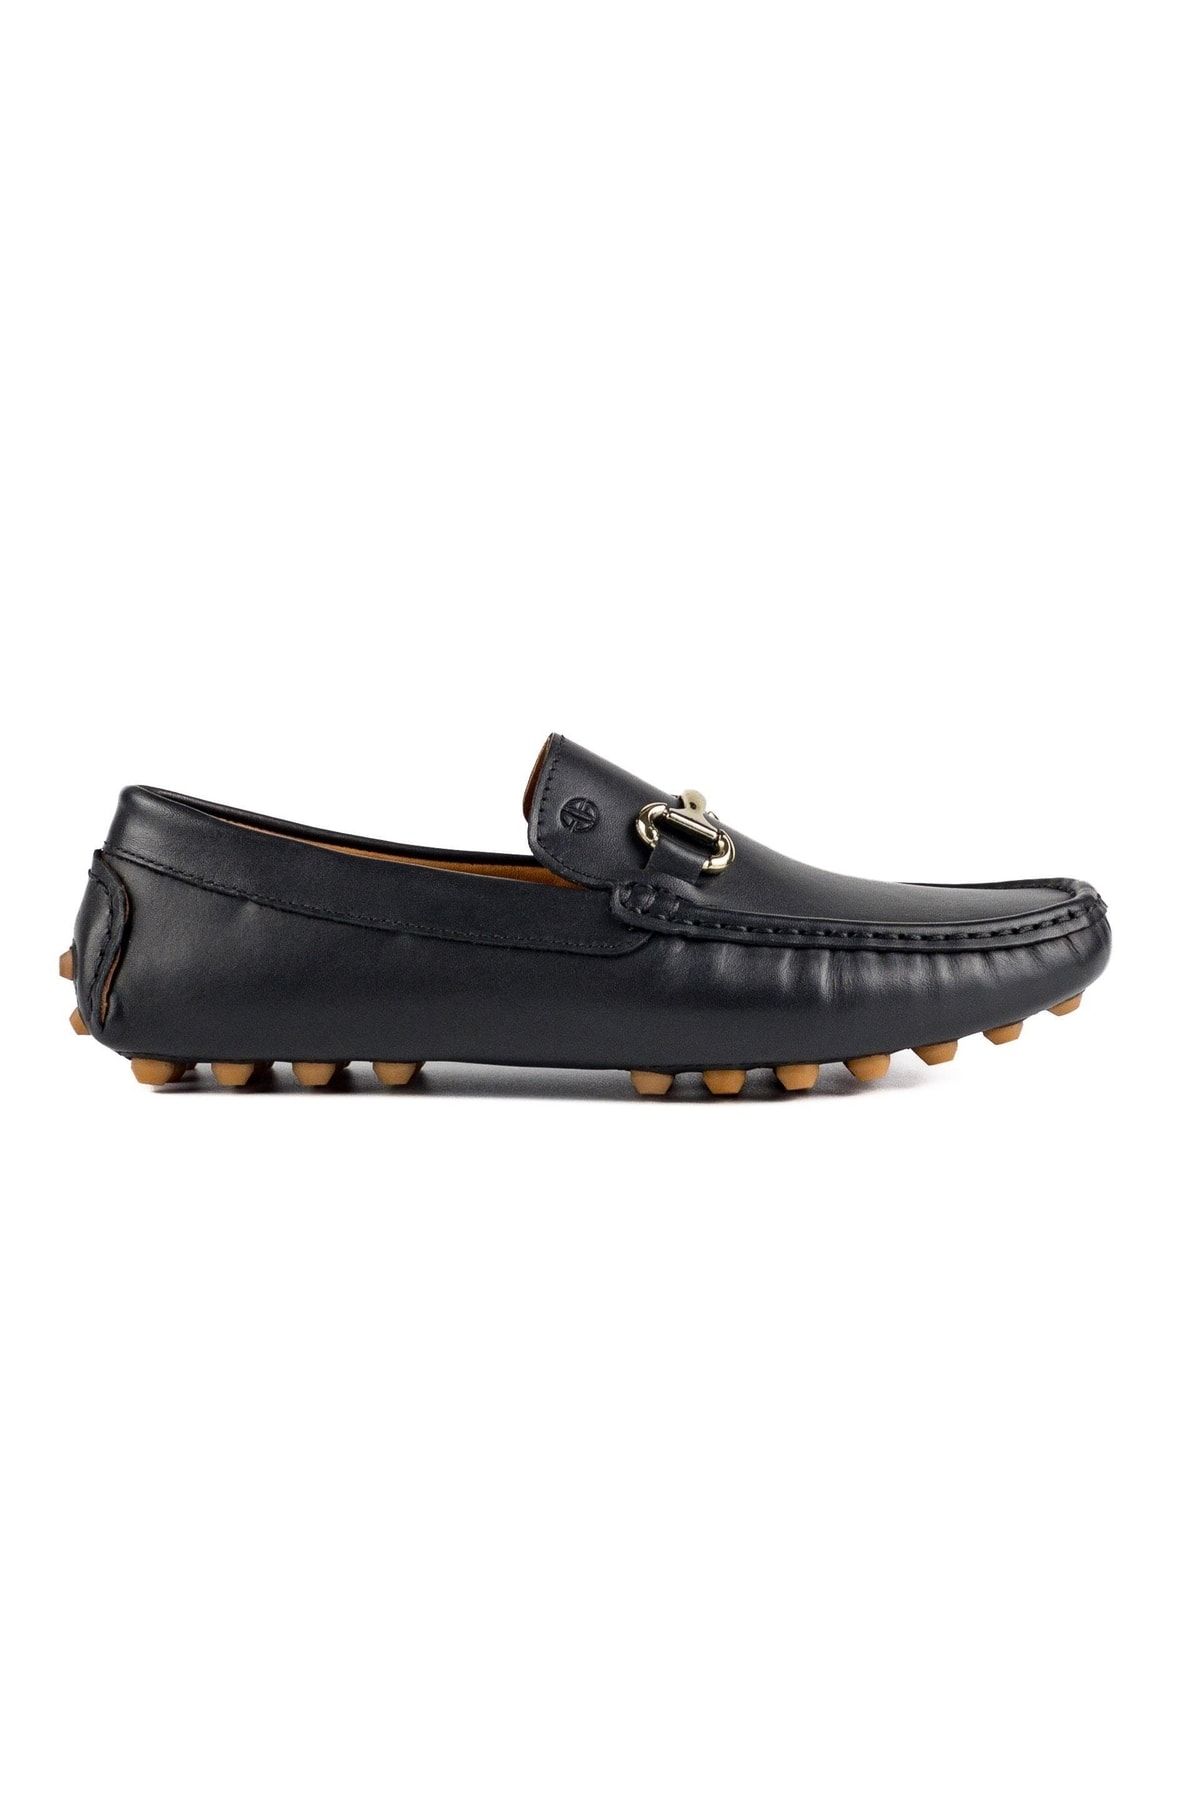 TEZCAN KUNDURA Gordion Hakiki Deri Krampon Taban Siyah Loafer Erkek Günlük Ayakkabı